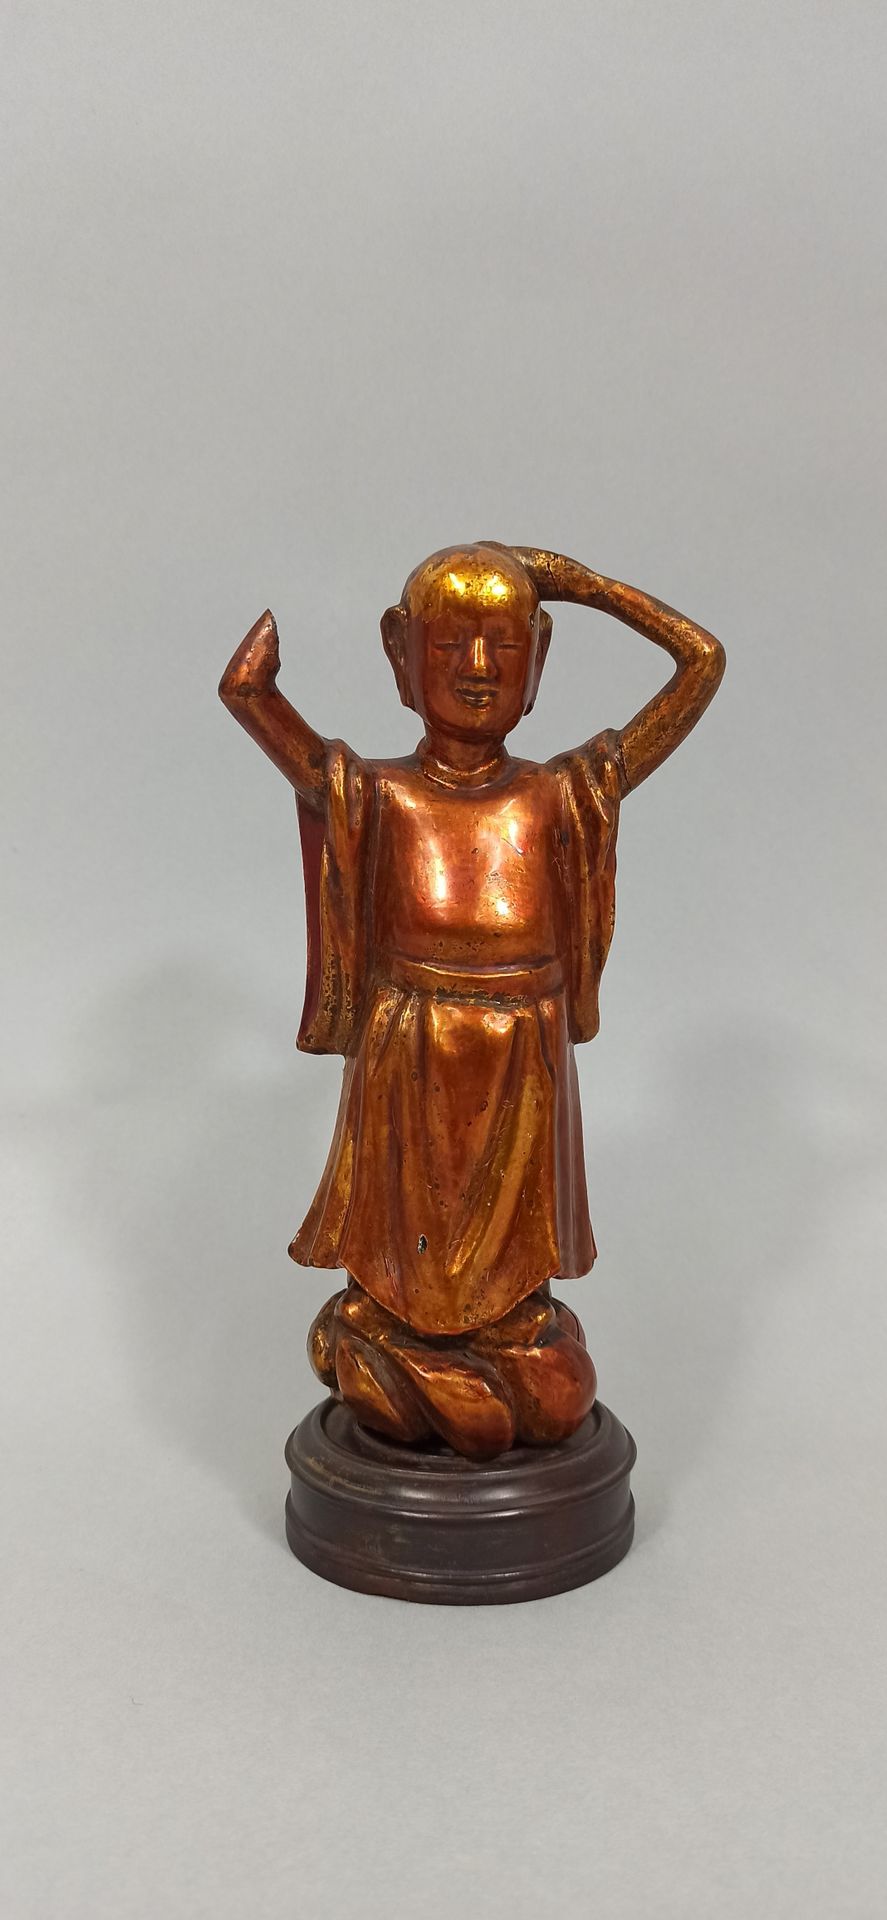 Null CINA - 1900 circa

Una statua in legno laccato oro di un giovane Buddha che&hellip;